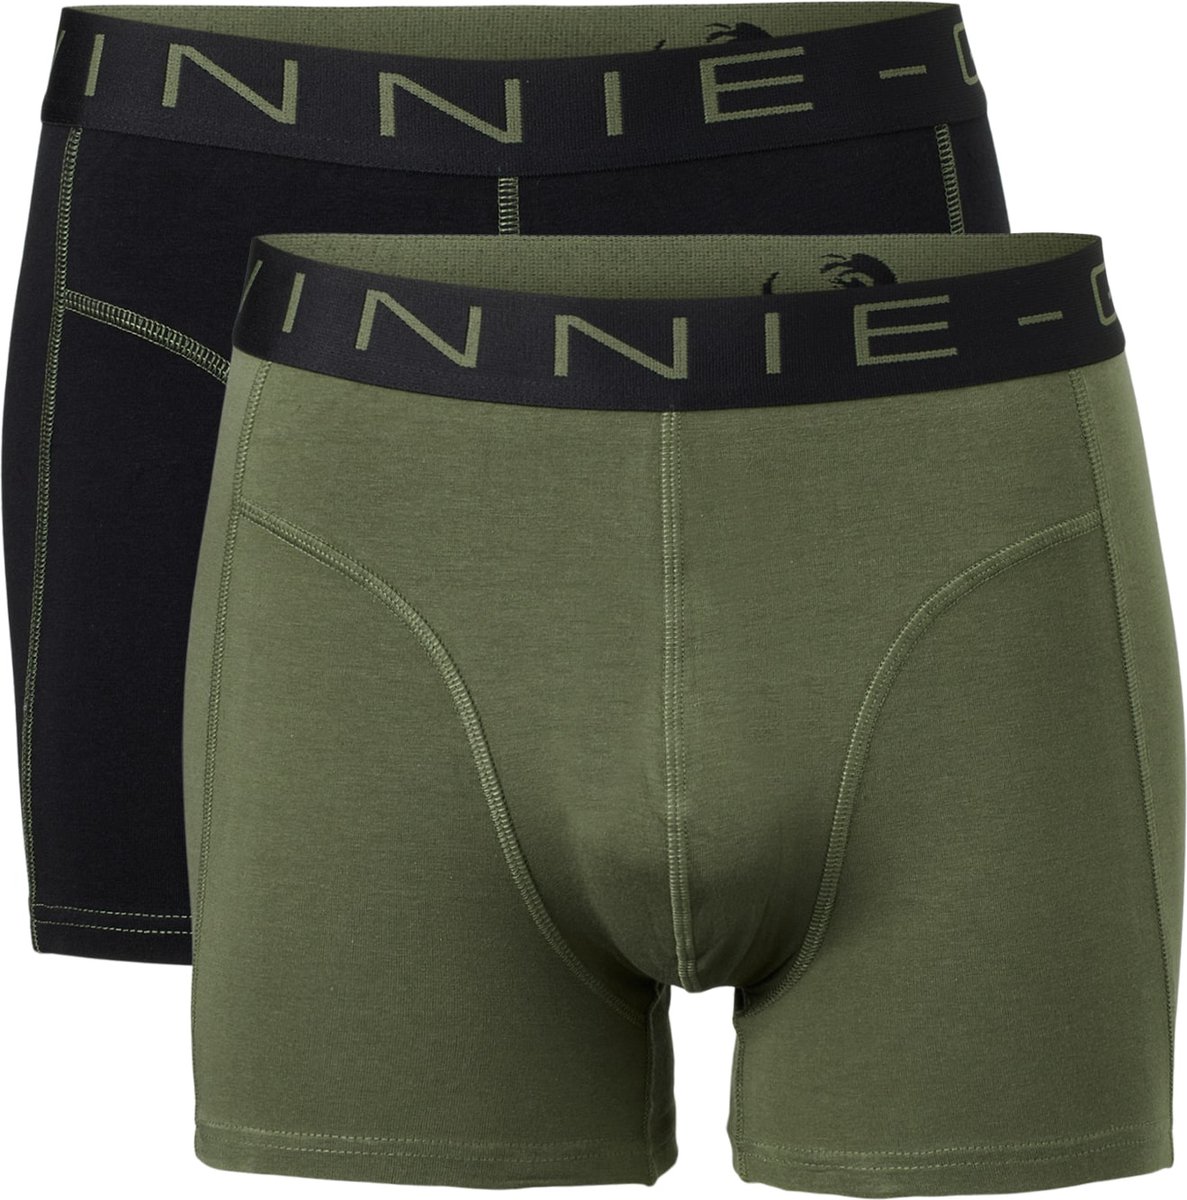 Vinnie-G Boxershorts 2-pack Black/Forest Stitches - Maat S - Heren Onderbroeken Zwart/Donkergroen - Geen irritante Labels - Katoen heren ondergoed